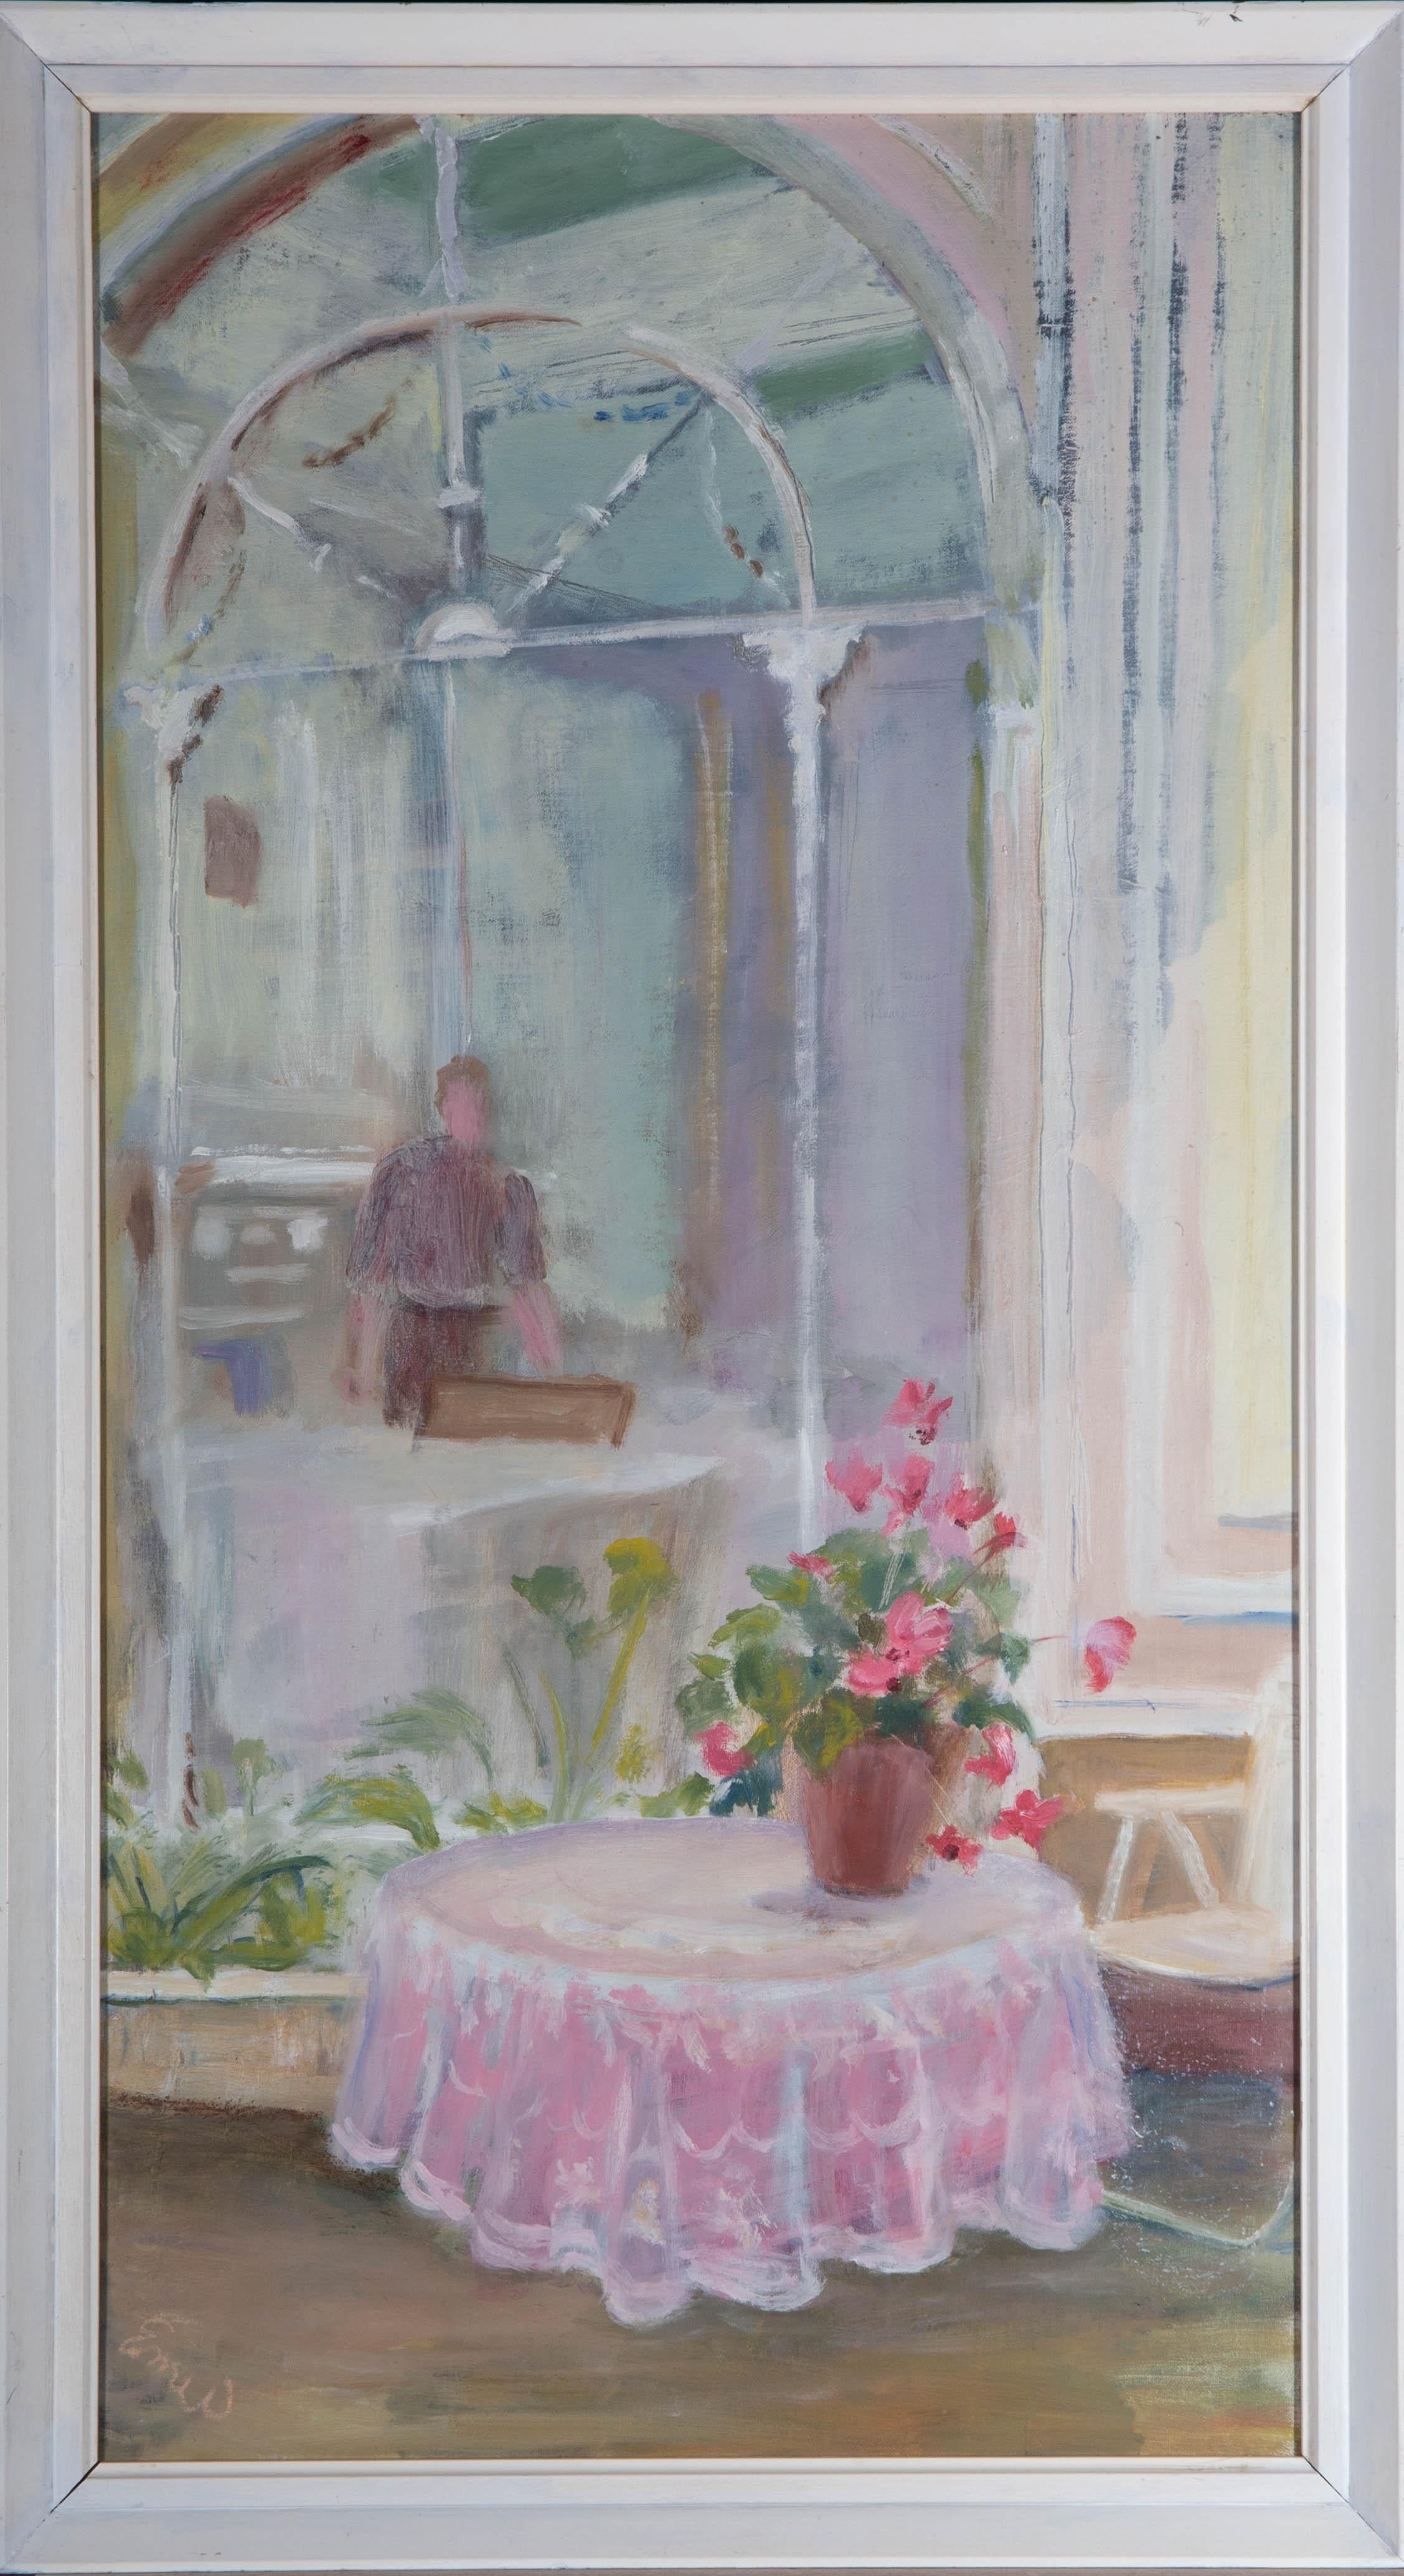 Une charmante peinture à l'huile de l'artiste Enid Williams, représentant une scène d'intérieur avec une table ronde, un vase de fleurs et une silhouette au loin. Signé dans le coin inférieur gauche. Le revers comporte une étiquette portant le nom